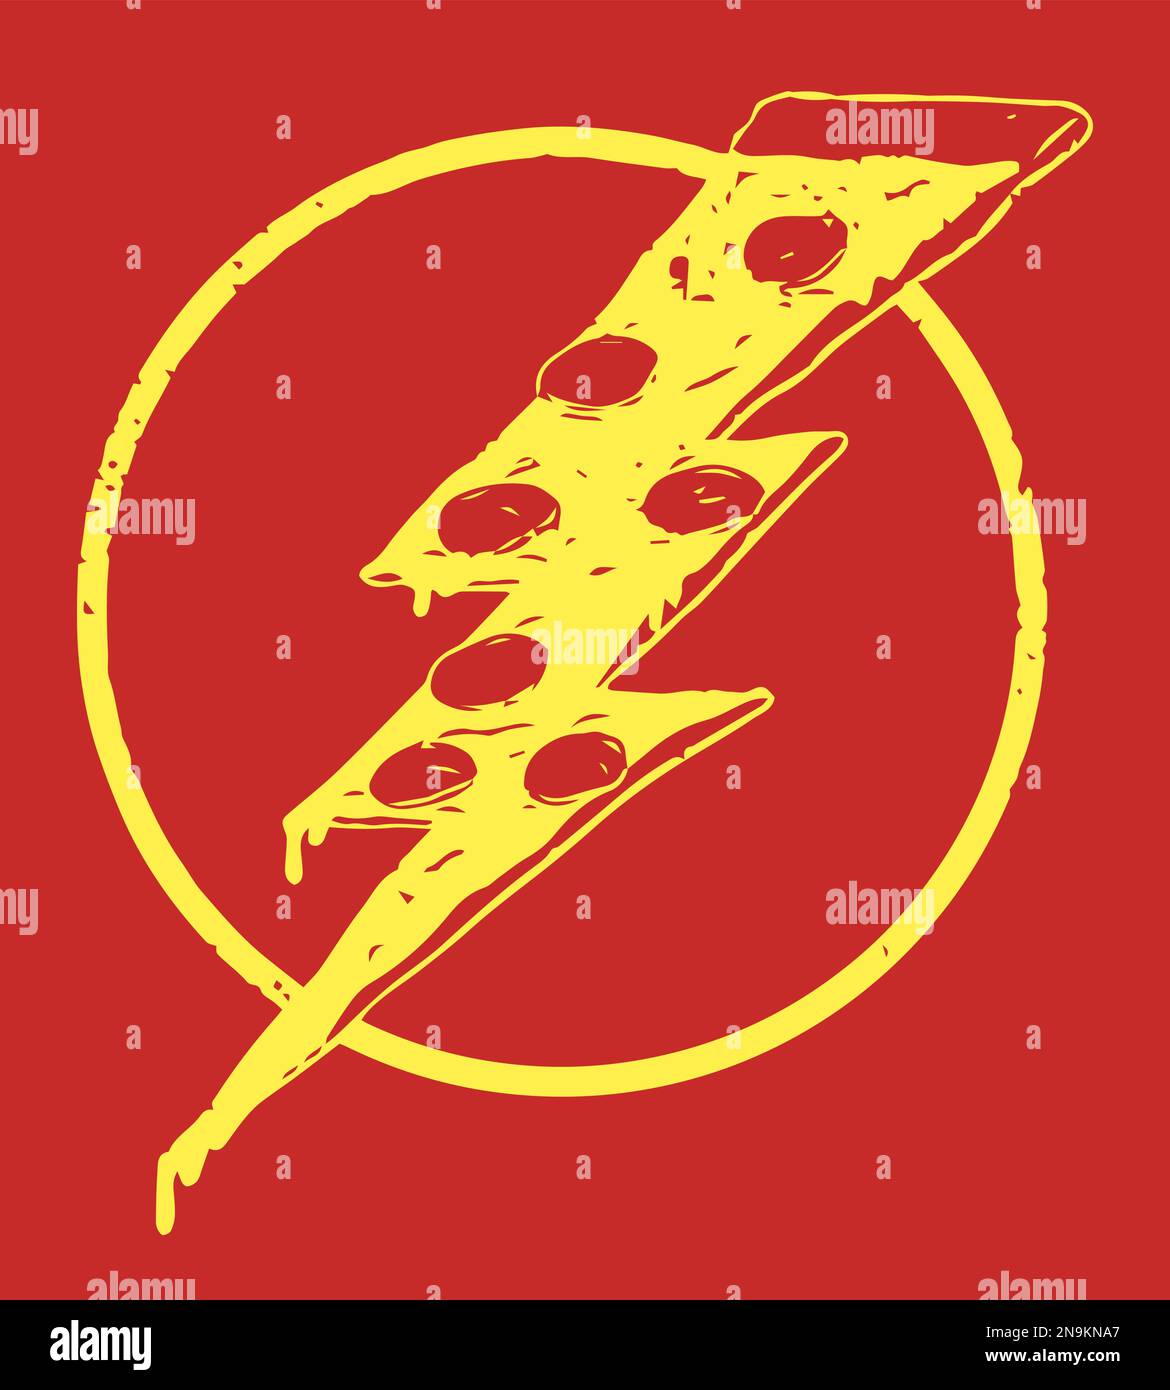 Morceau de pizza en forme d'éclair, art isolé de style rétro Illustration de Vecteur